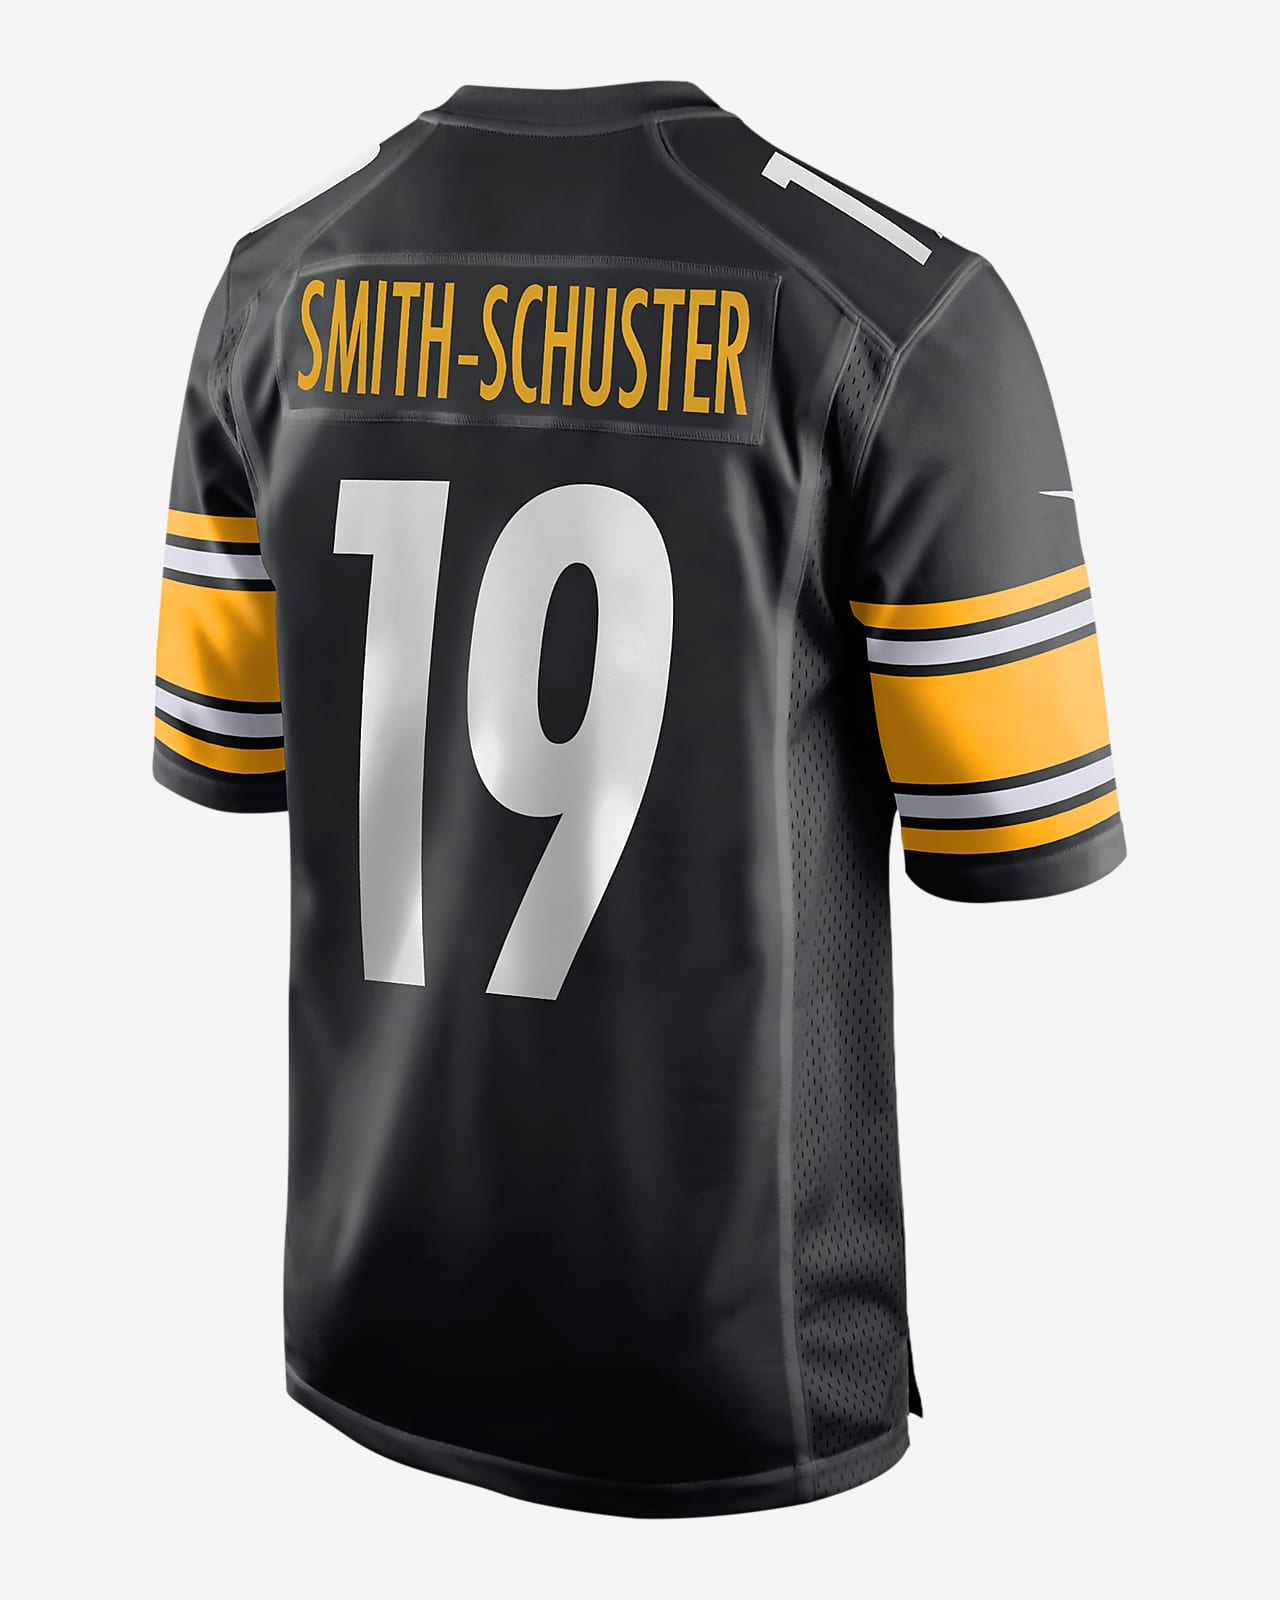 juju smith schuster game worn jersey